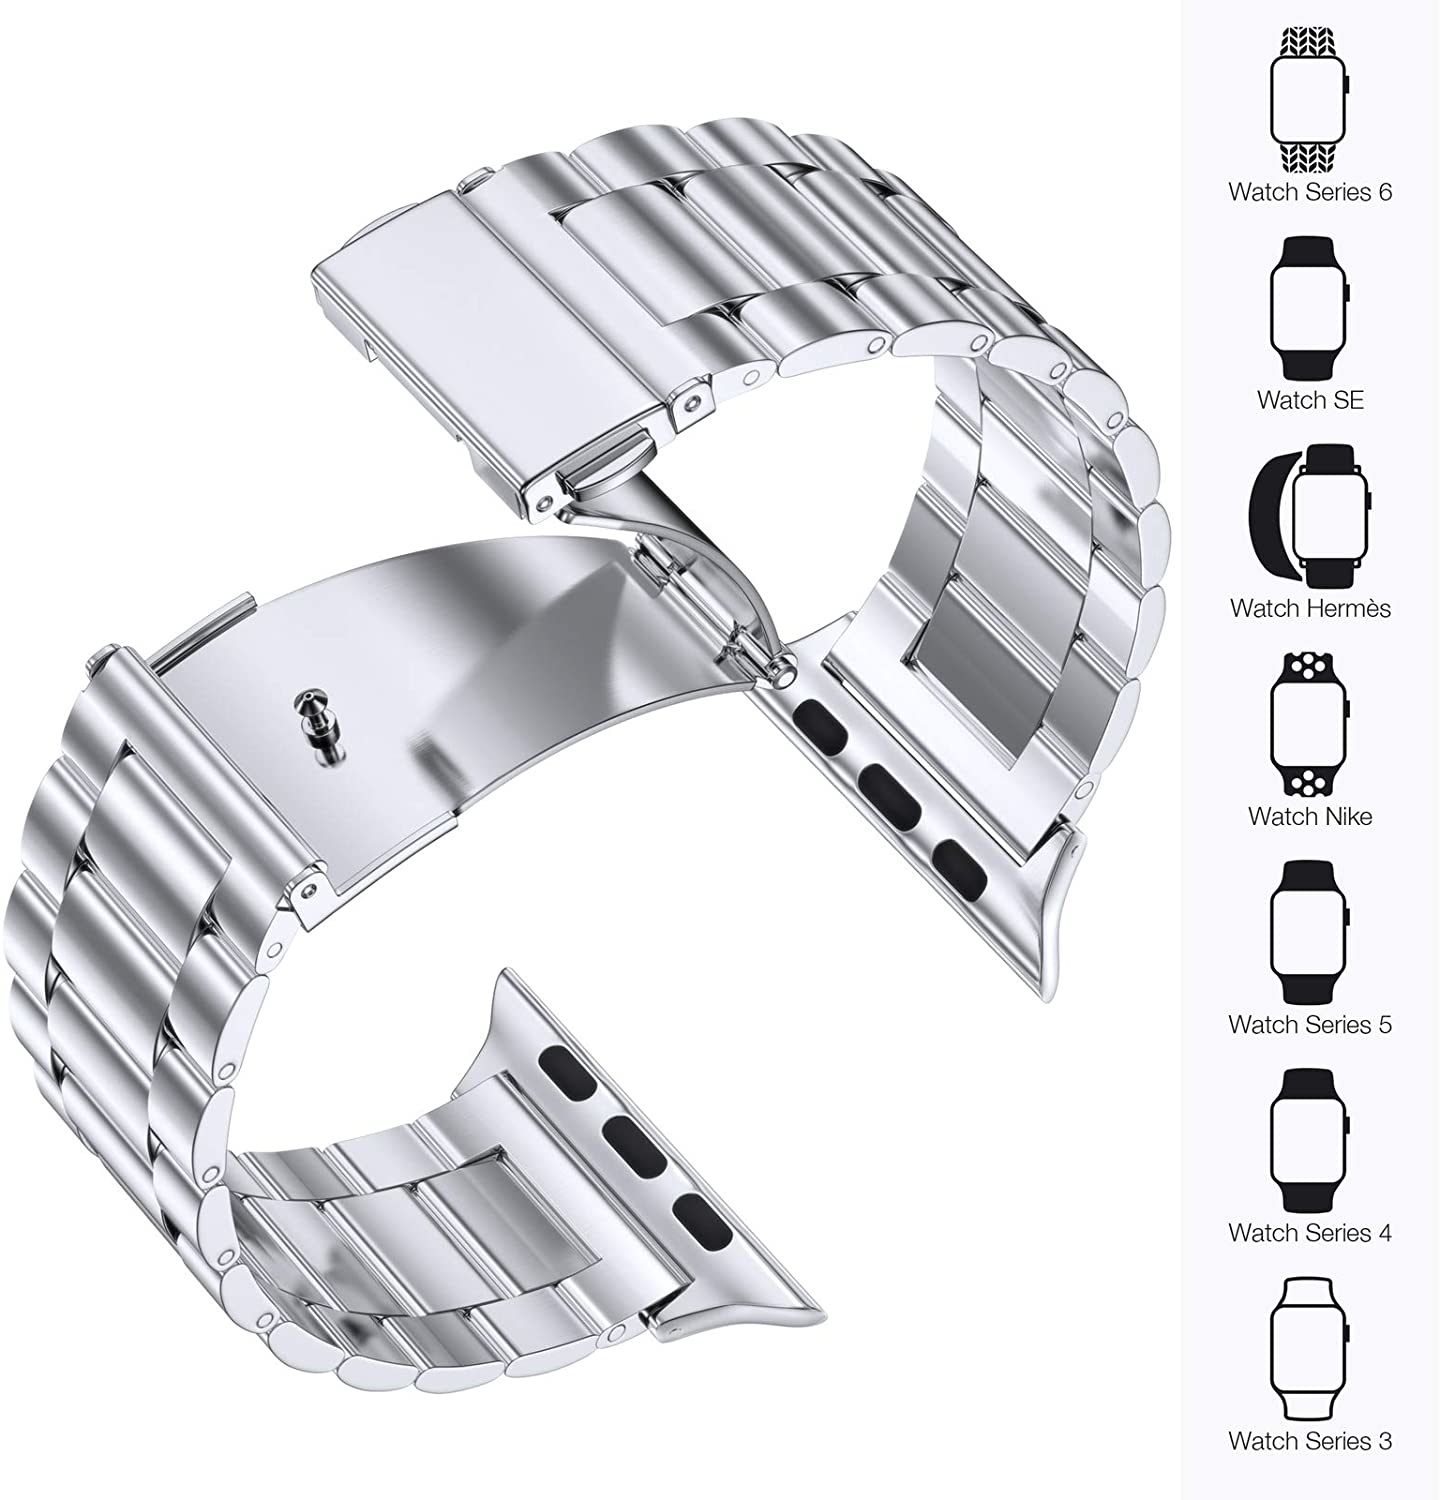 Correa de eslabones de acero con cuentas para el Apple Watch - plata